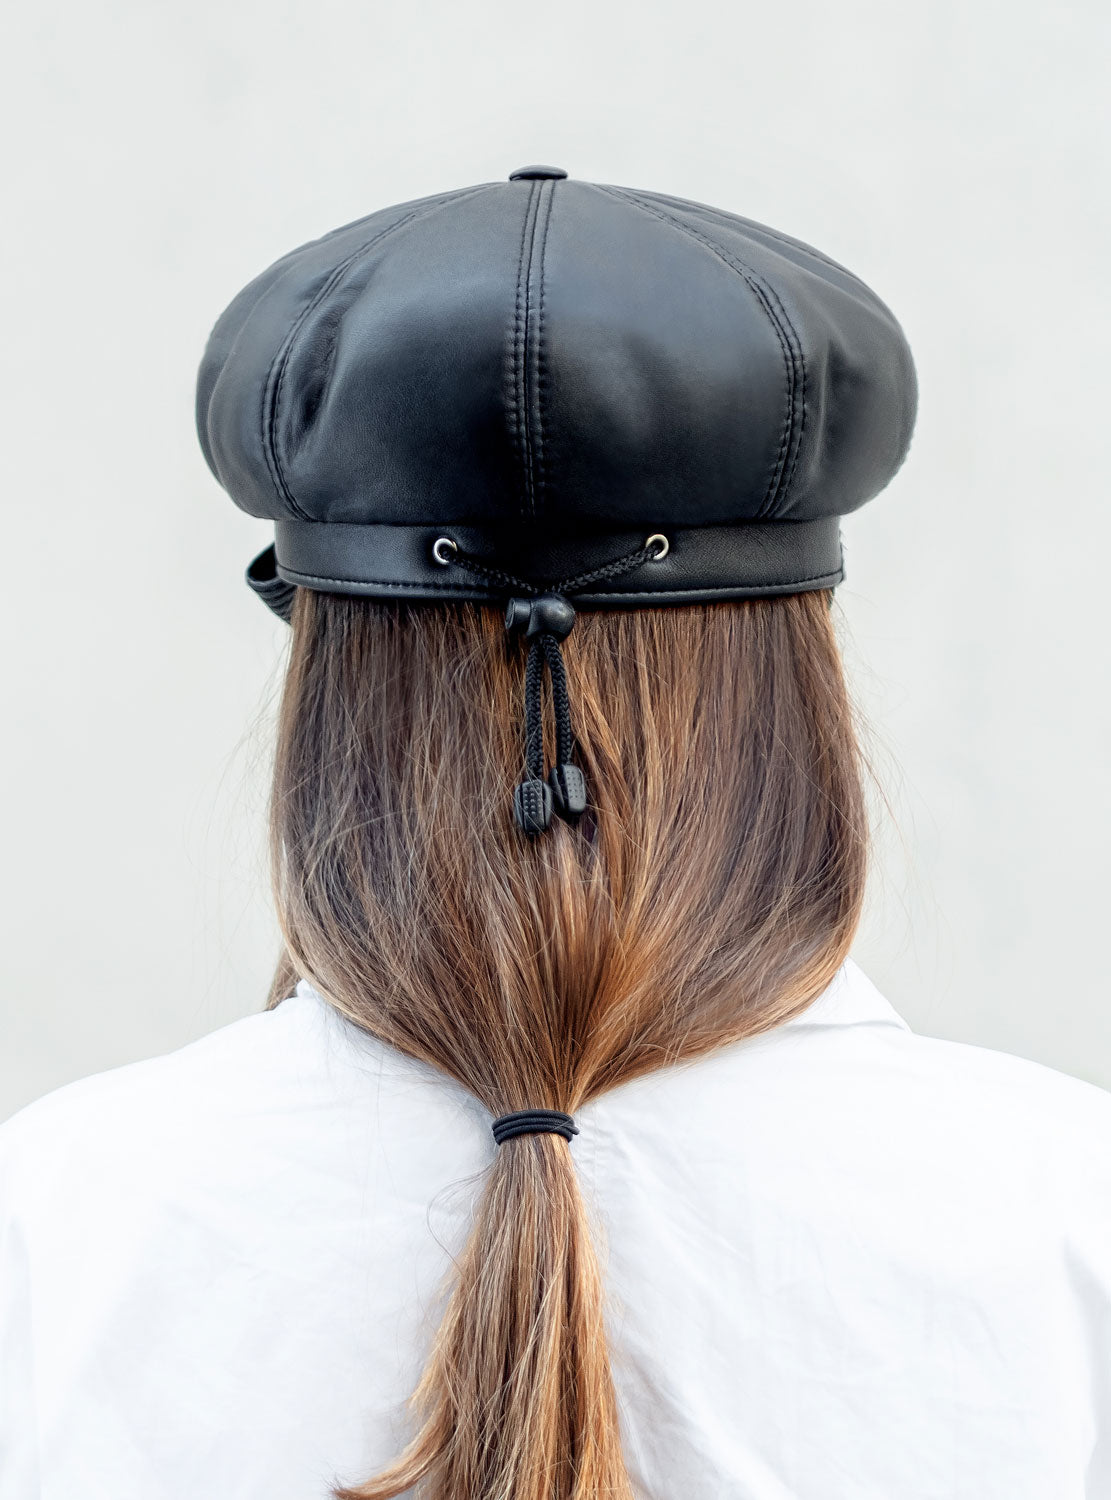 Leather cap with inverted peak